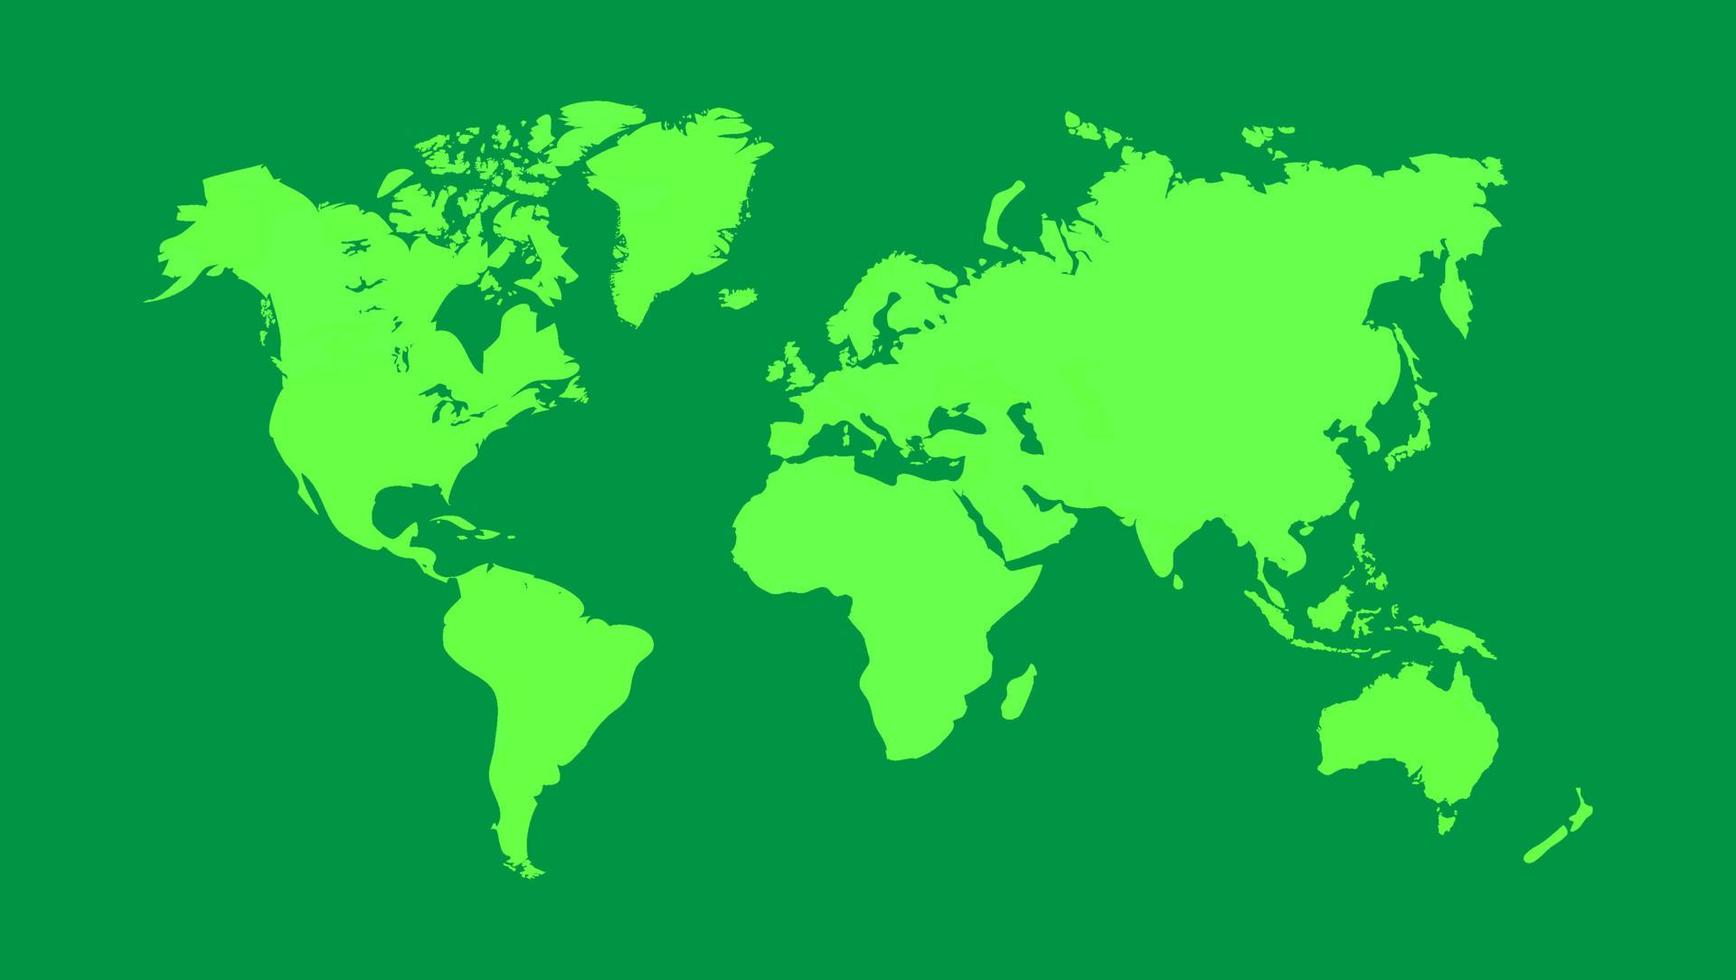 Weltkartenvektorillustration, lokalisiert auf grünem Hintergrund. flache Erde. Globus oder Weltkarte vektor